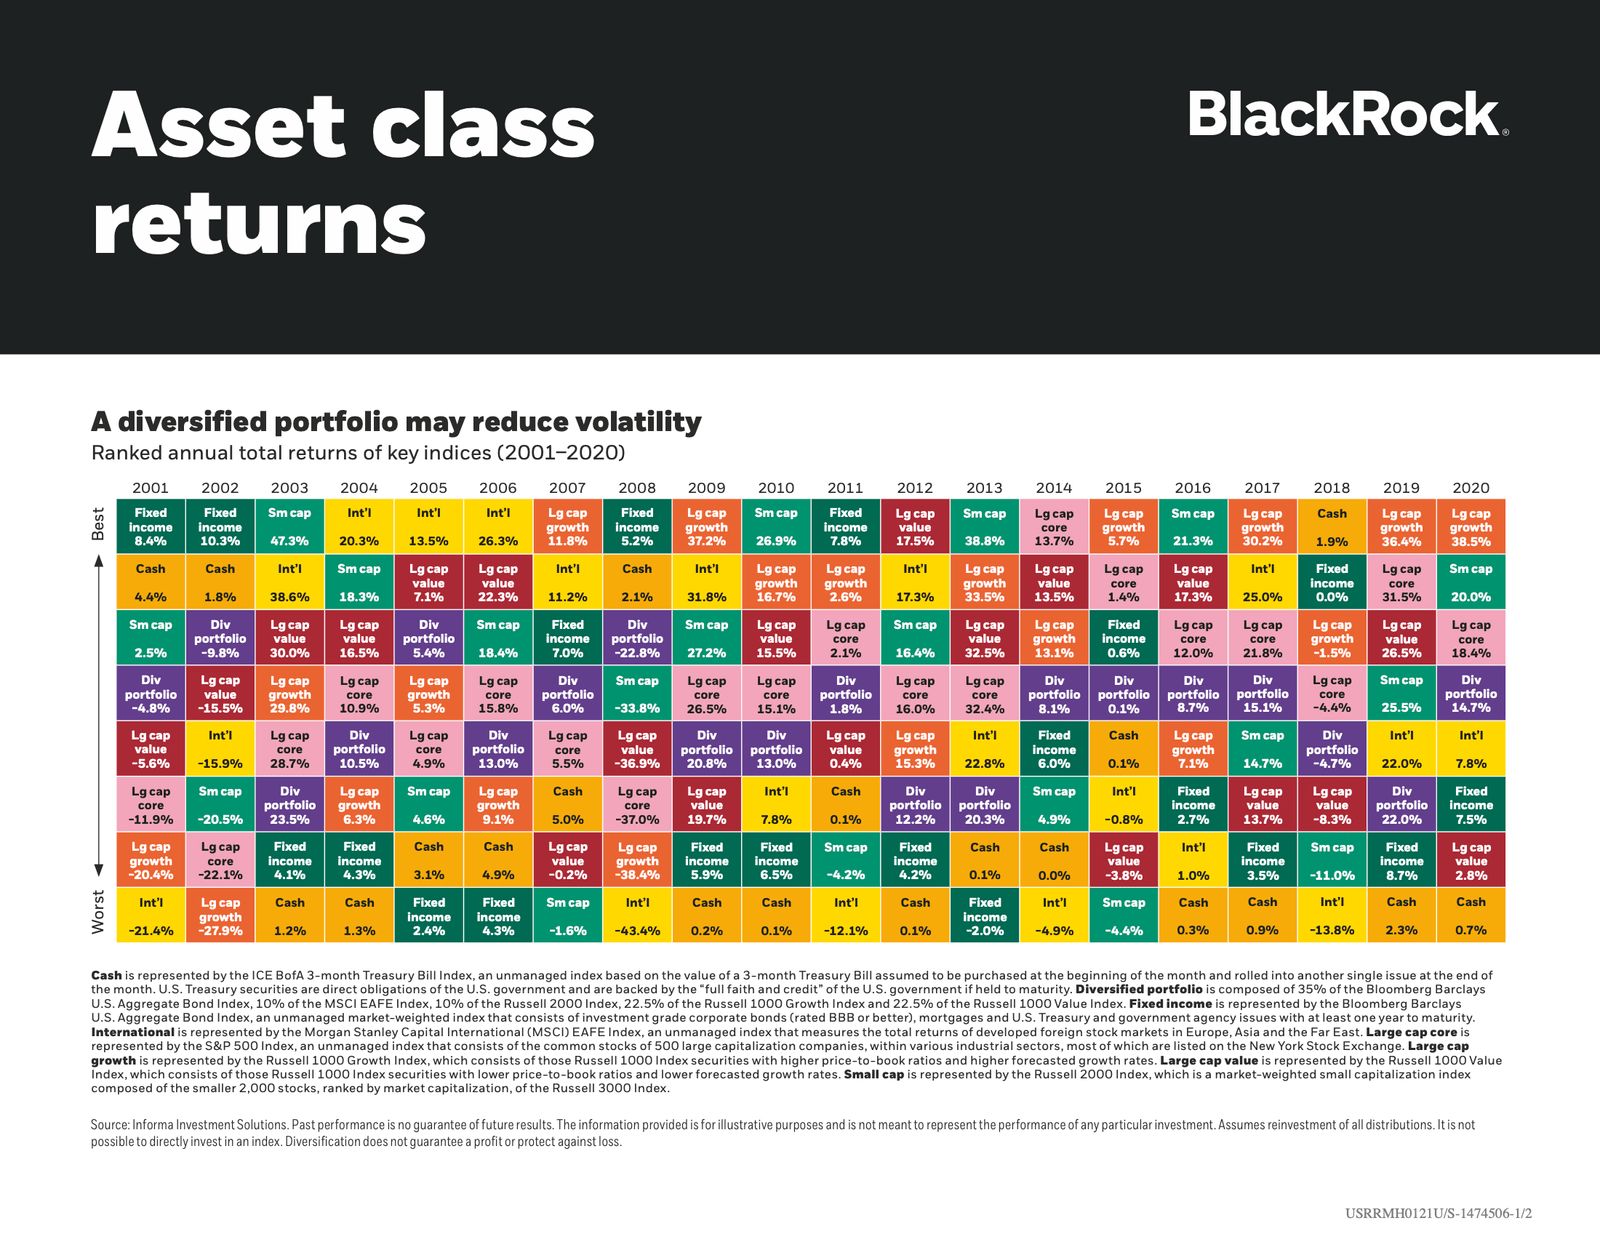 Rendements des classes d'actifs par année de 2001 à 2020